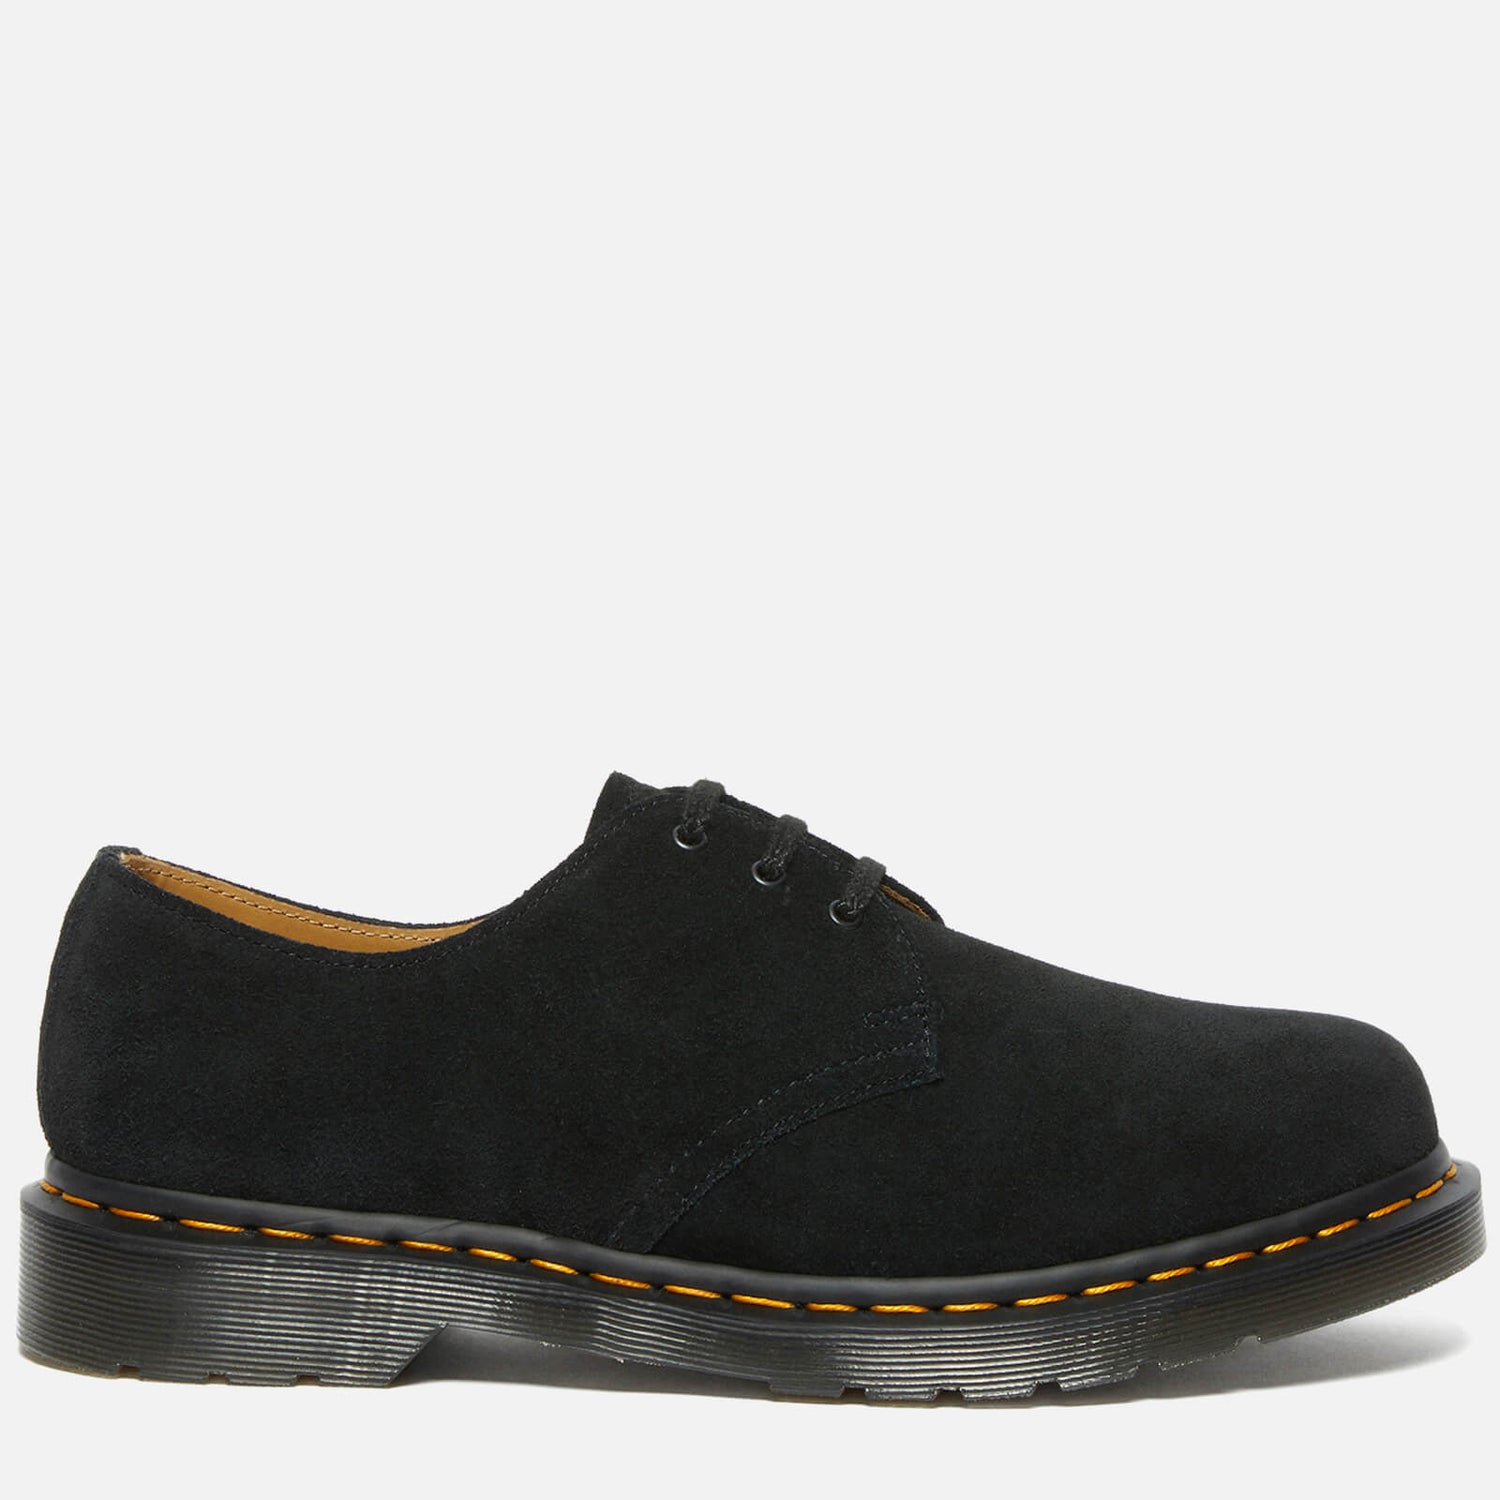 Dr. Martens Men's 1461 Suede 3-Eye Shoes - Black